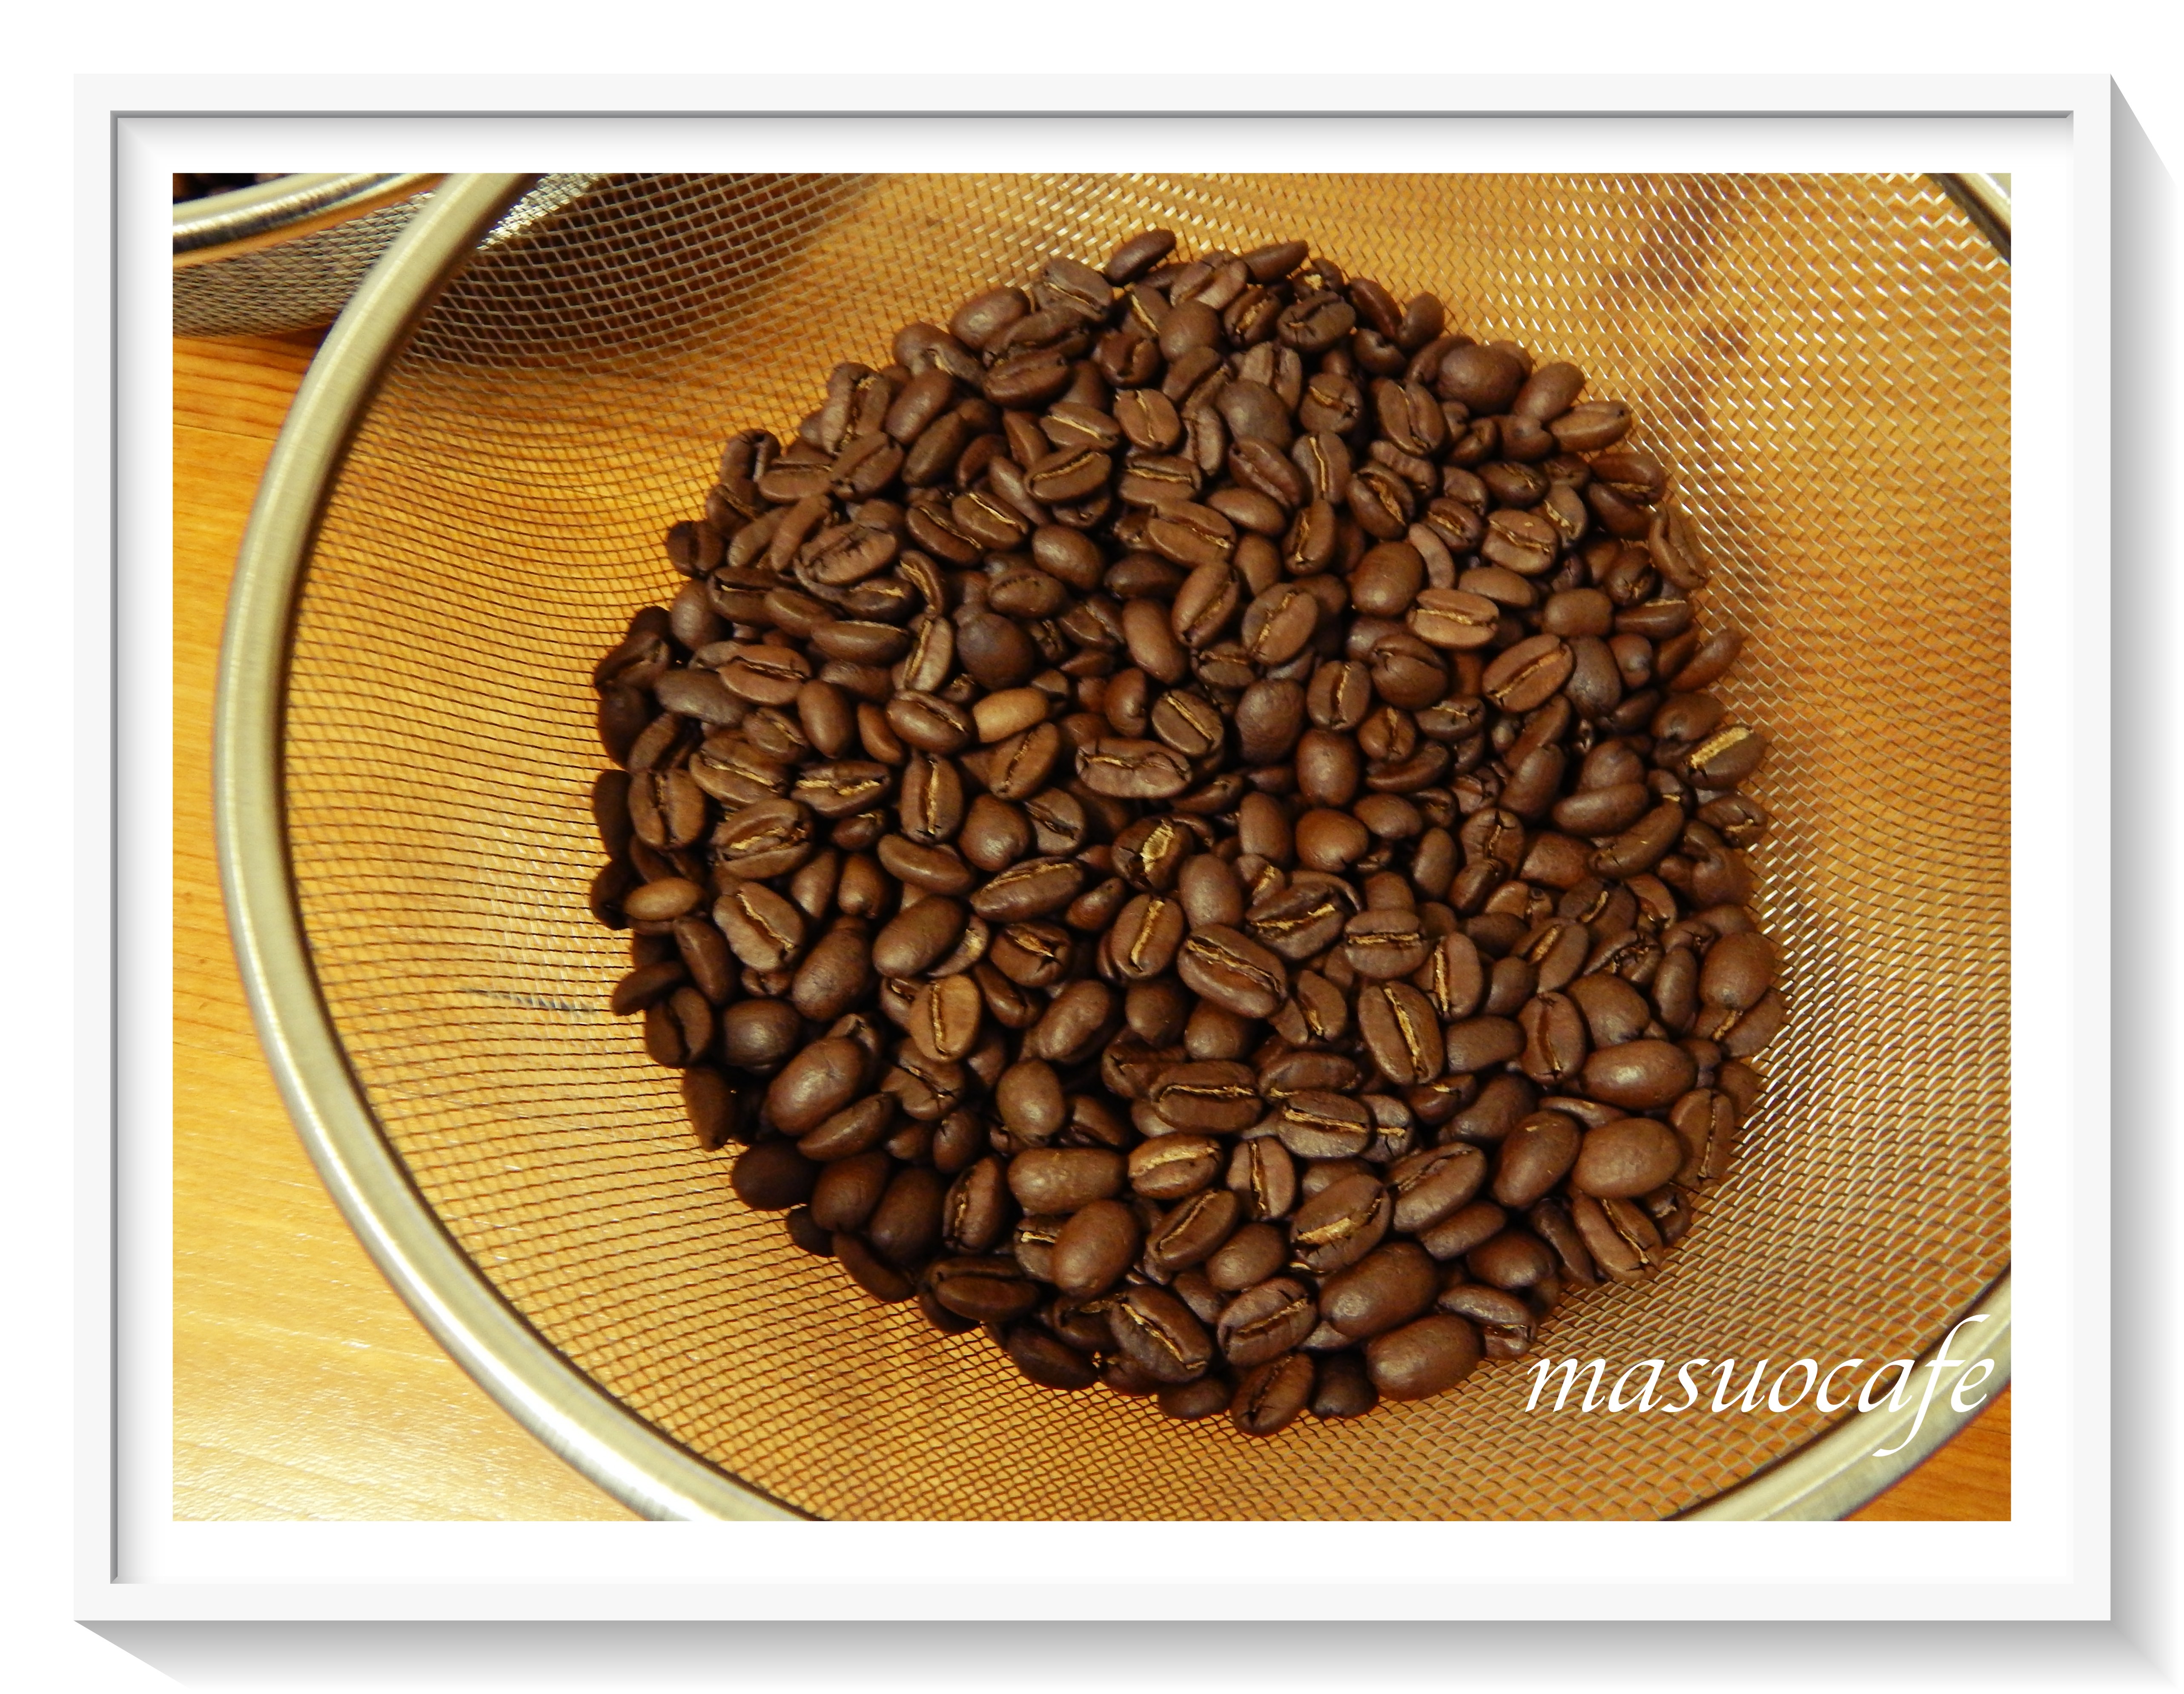 【blog】さらに美味しいコーヒーを求めて、焙煎家として試行錯誤の毎日。